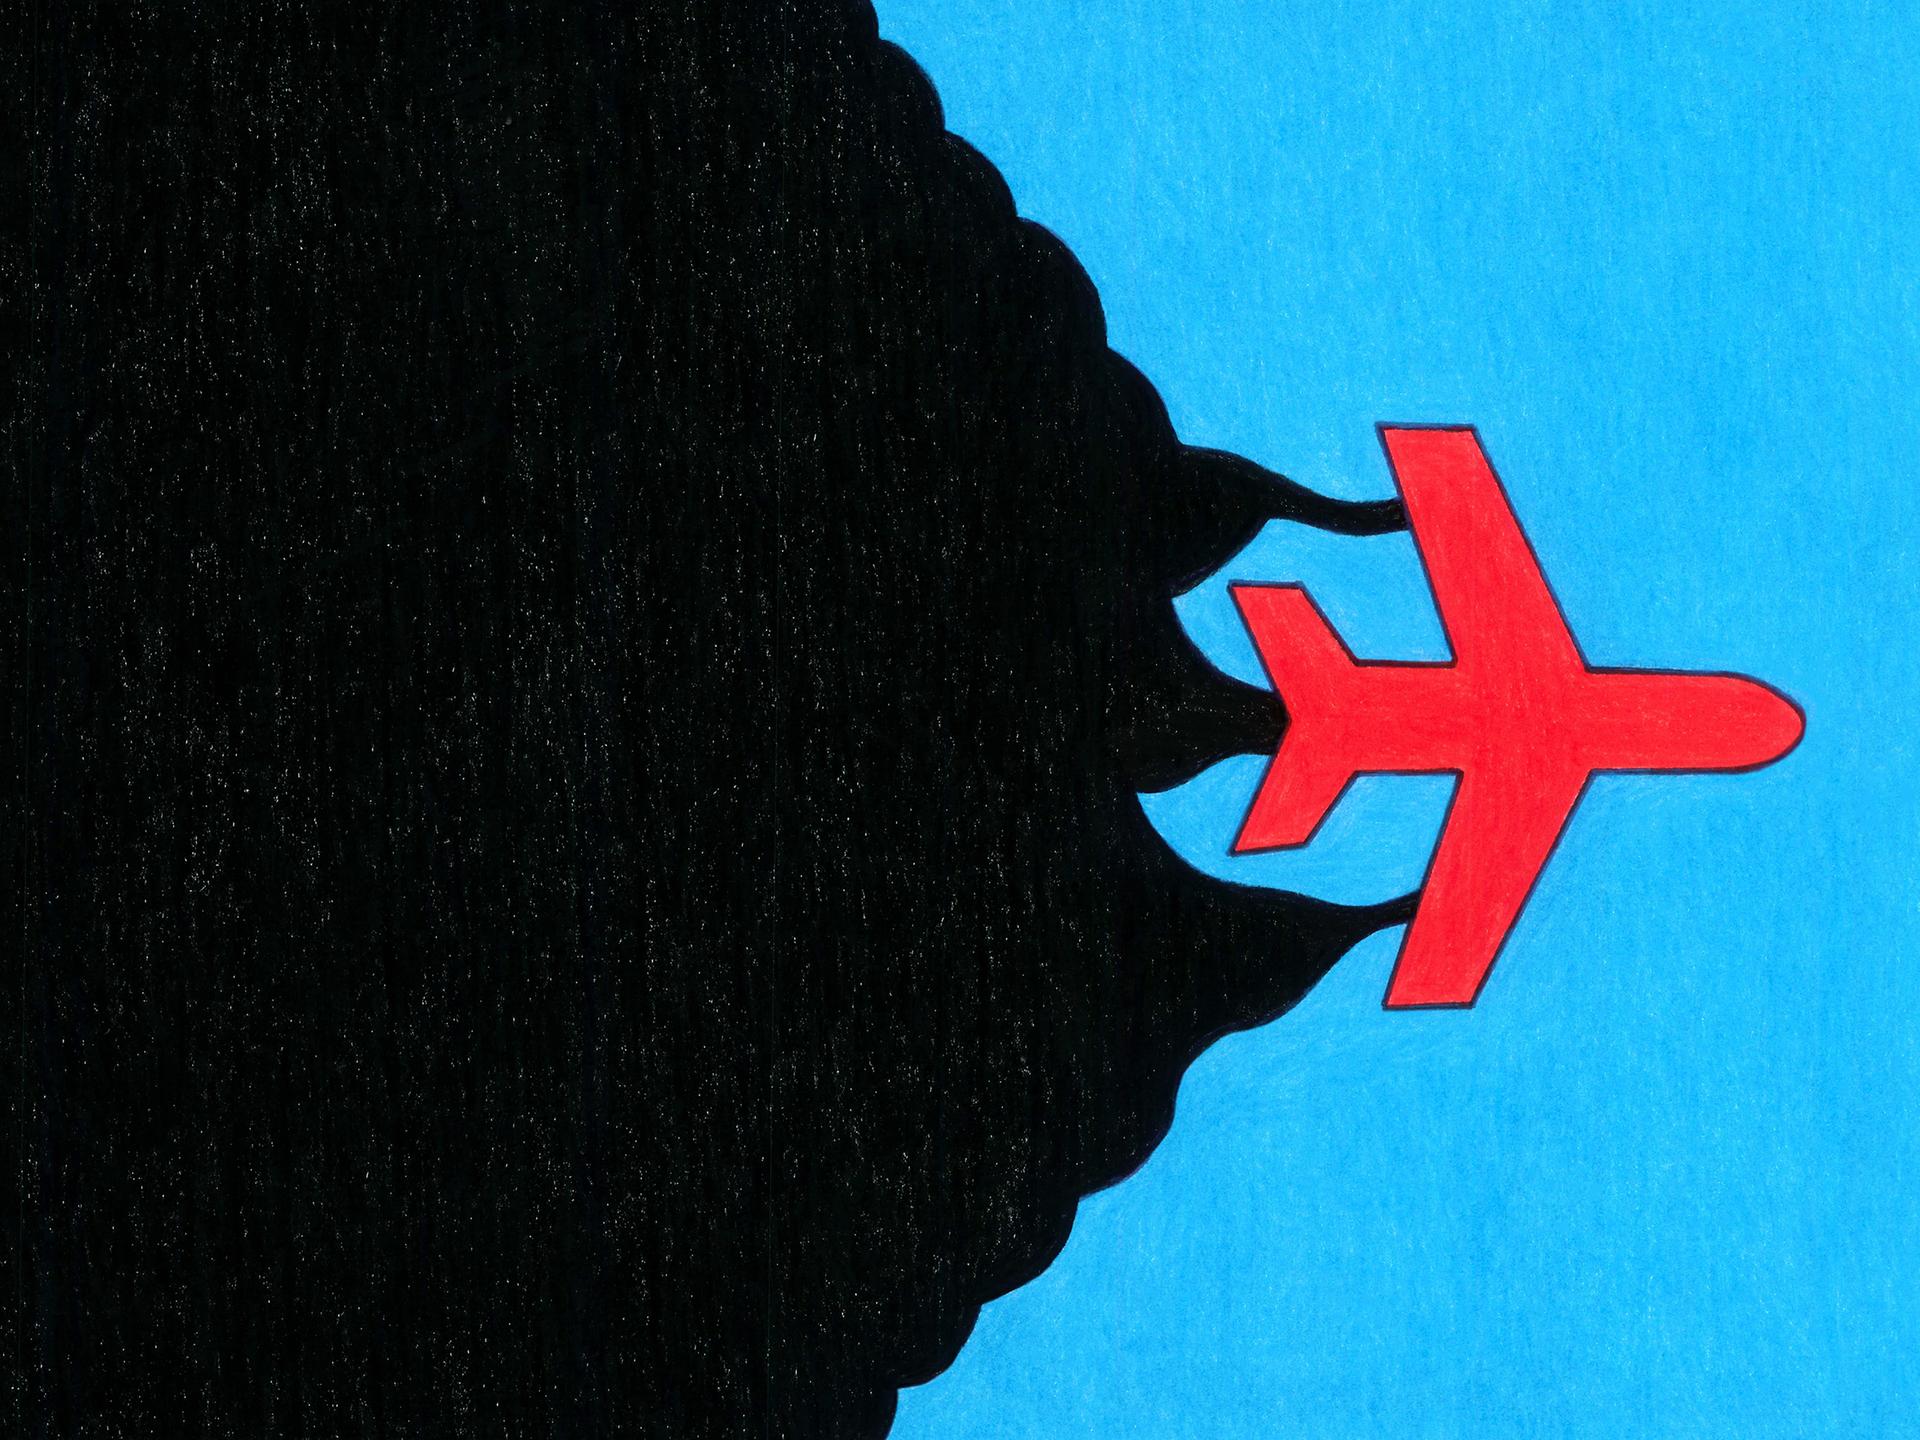 Zeichnung eines roten Flugzeugs auf blauem Grund, das schwarzen Rauch bildfüllend nach sich zieht.